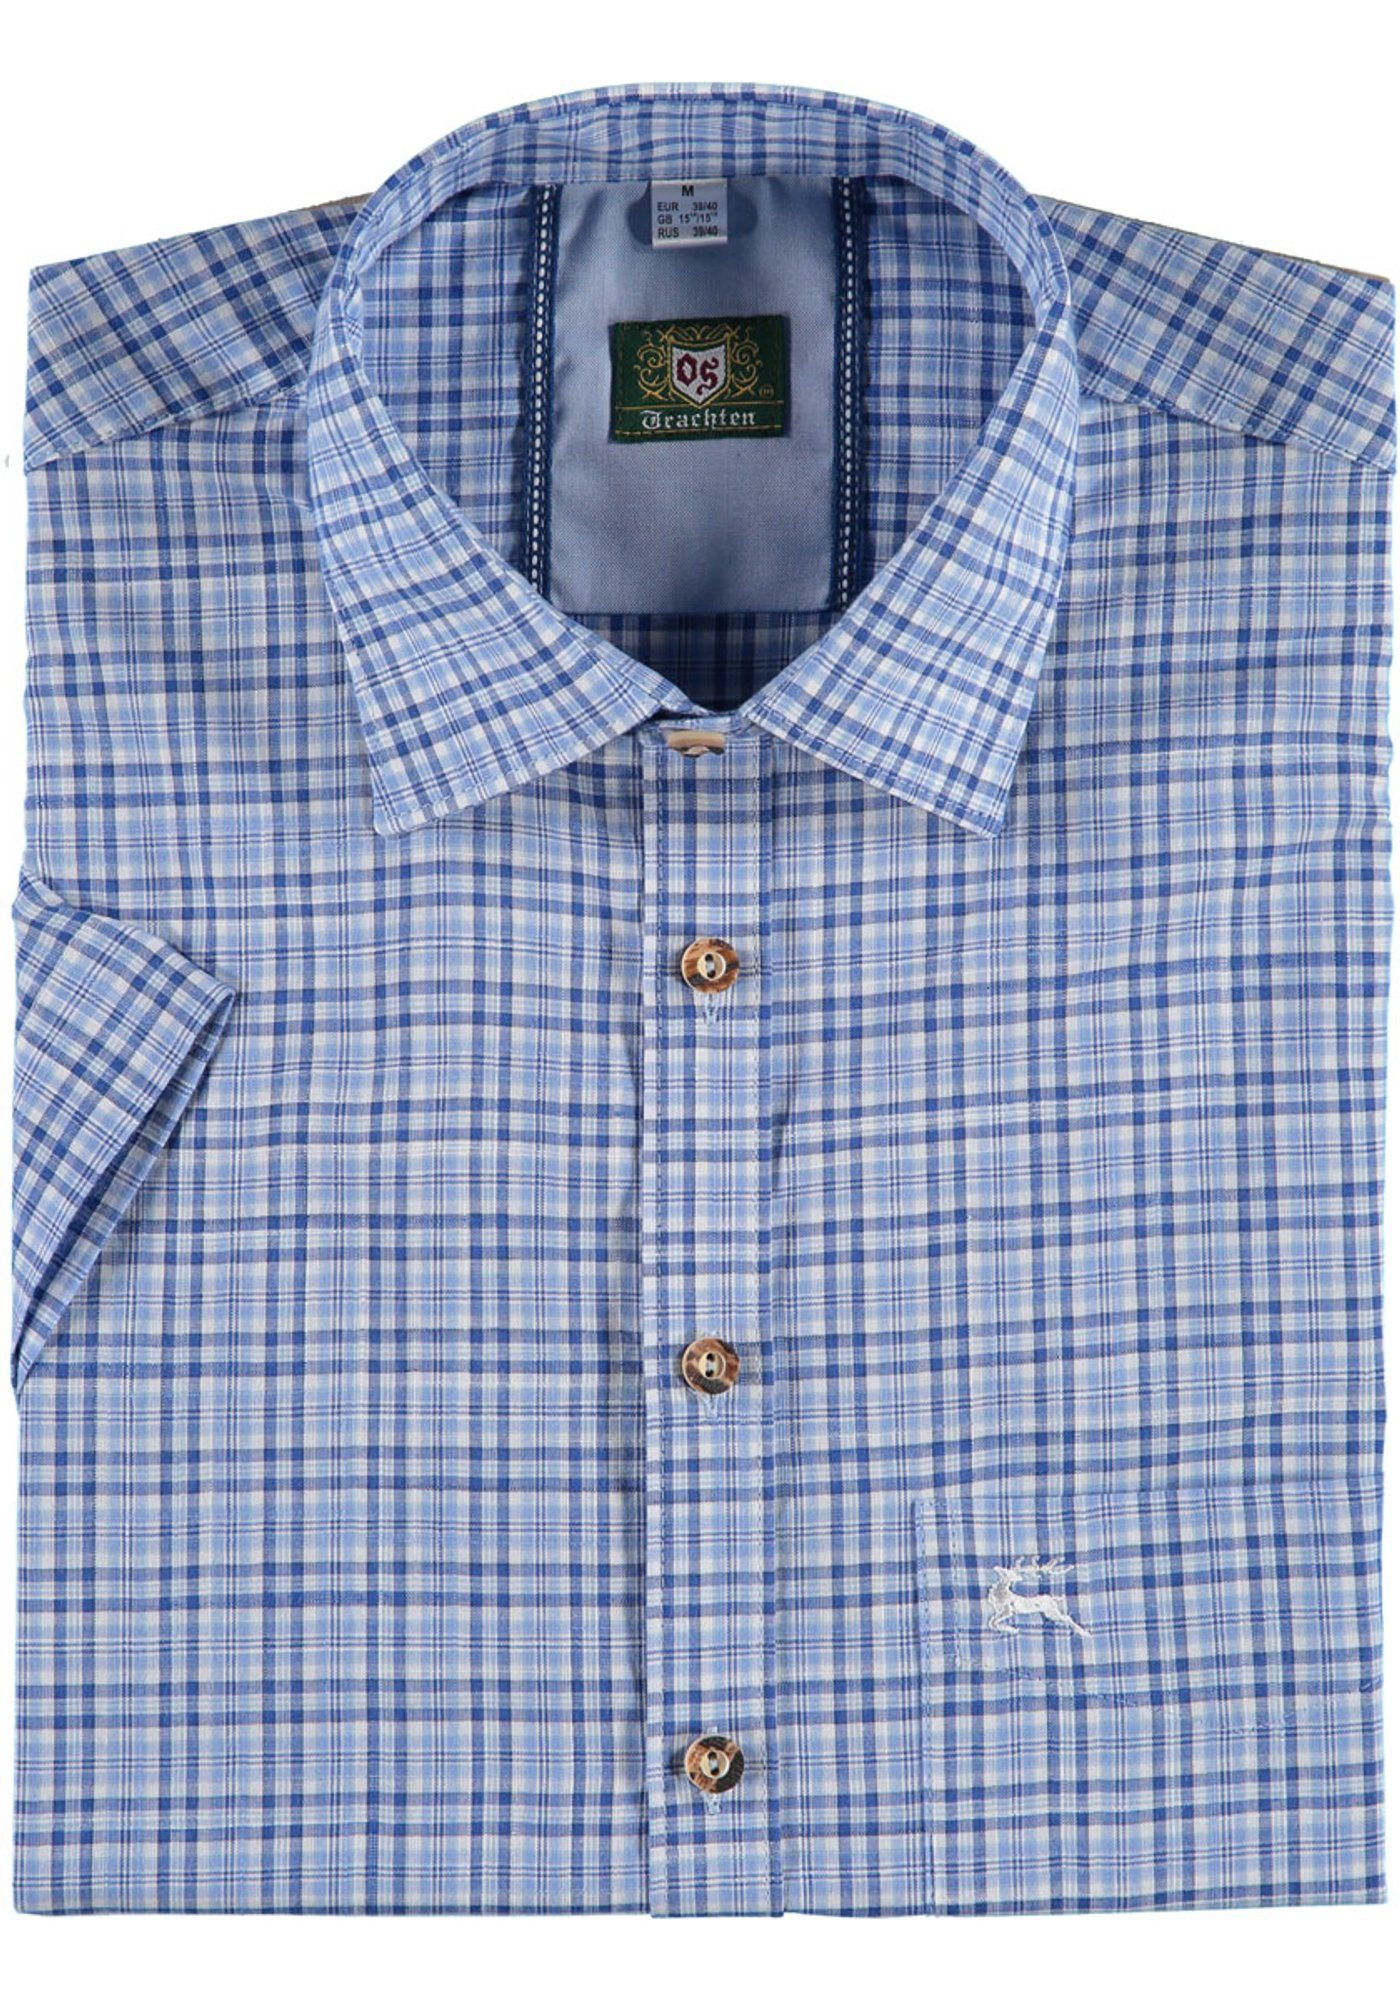 OS-Trachten Trachtenhemd Gudio Herren Kurzarmhemd mit Hirsch-Stickerei auf der Brusttasche marine